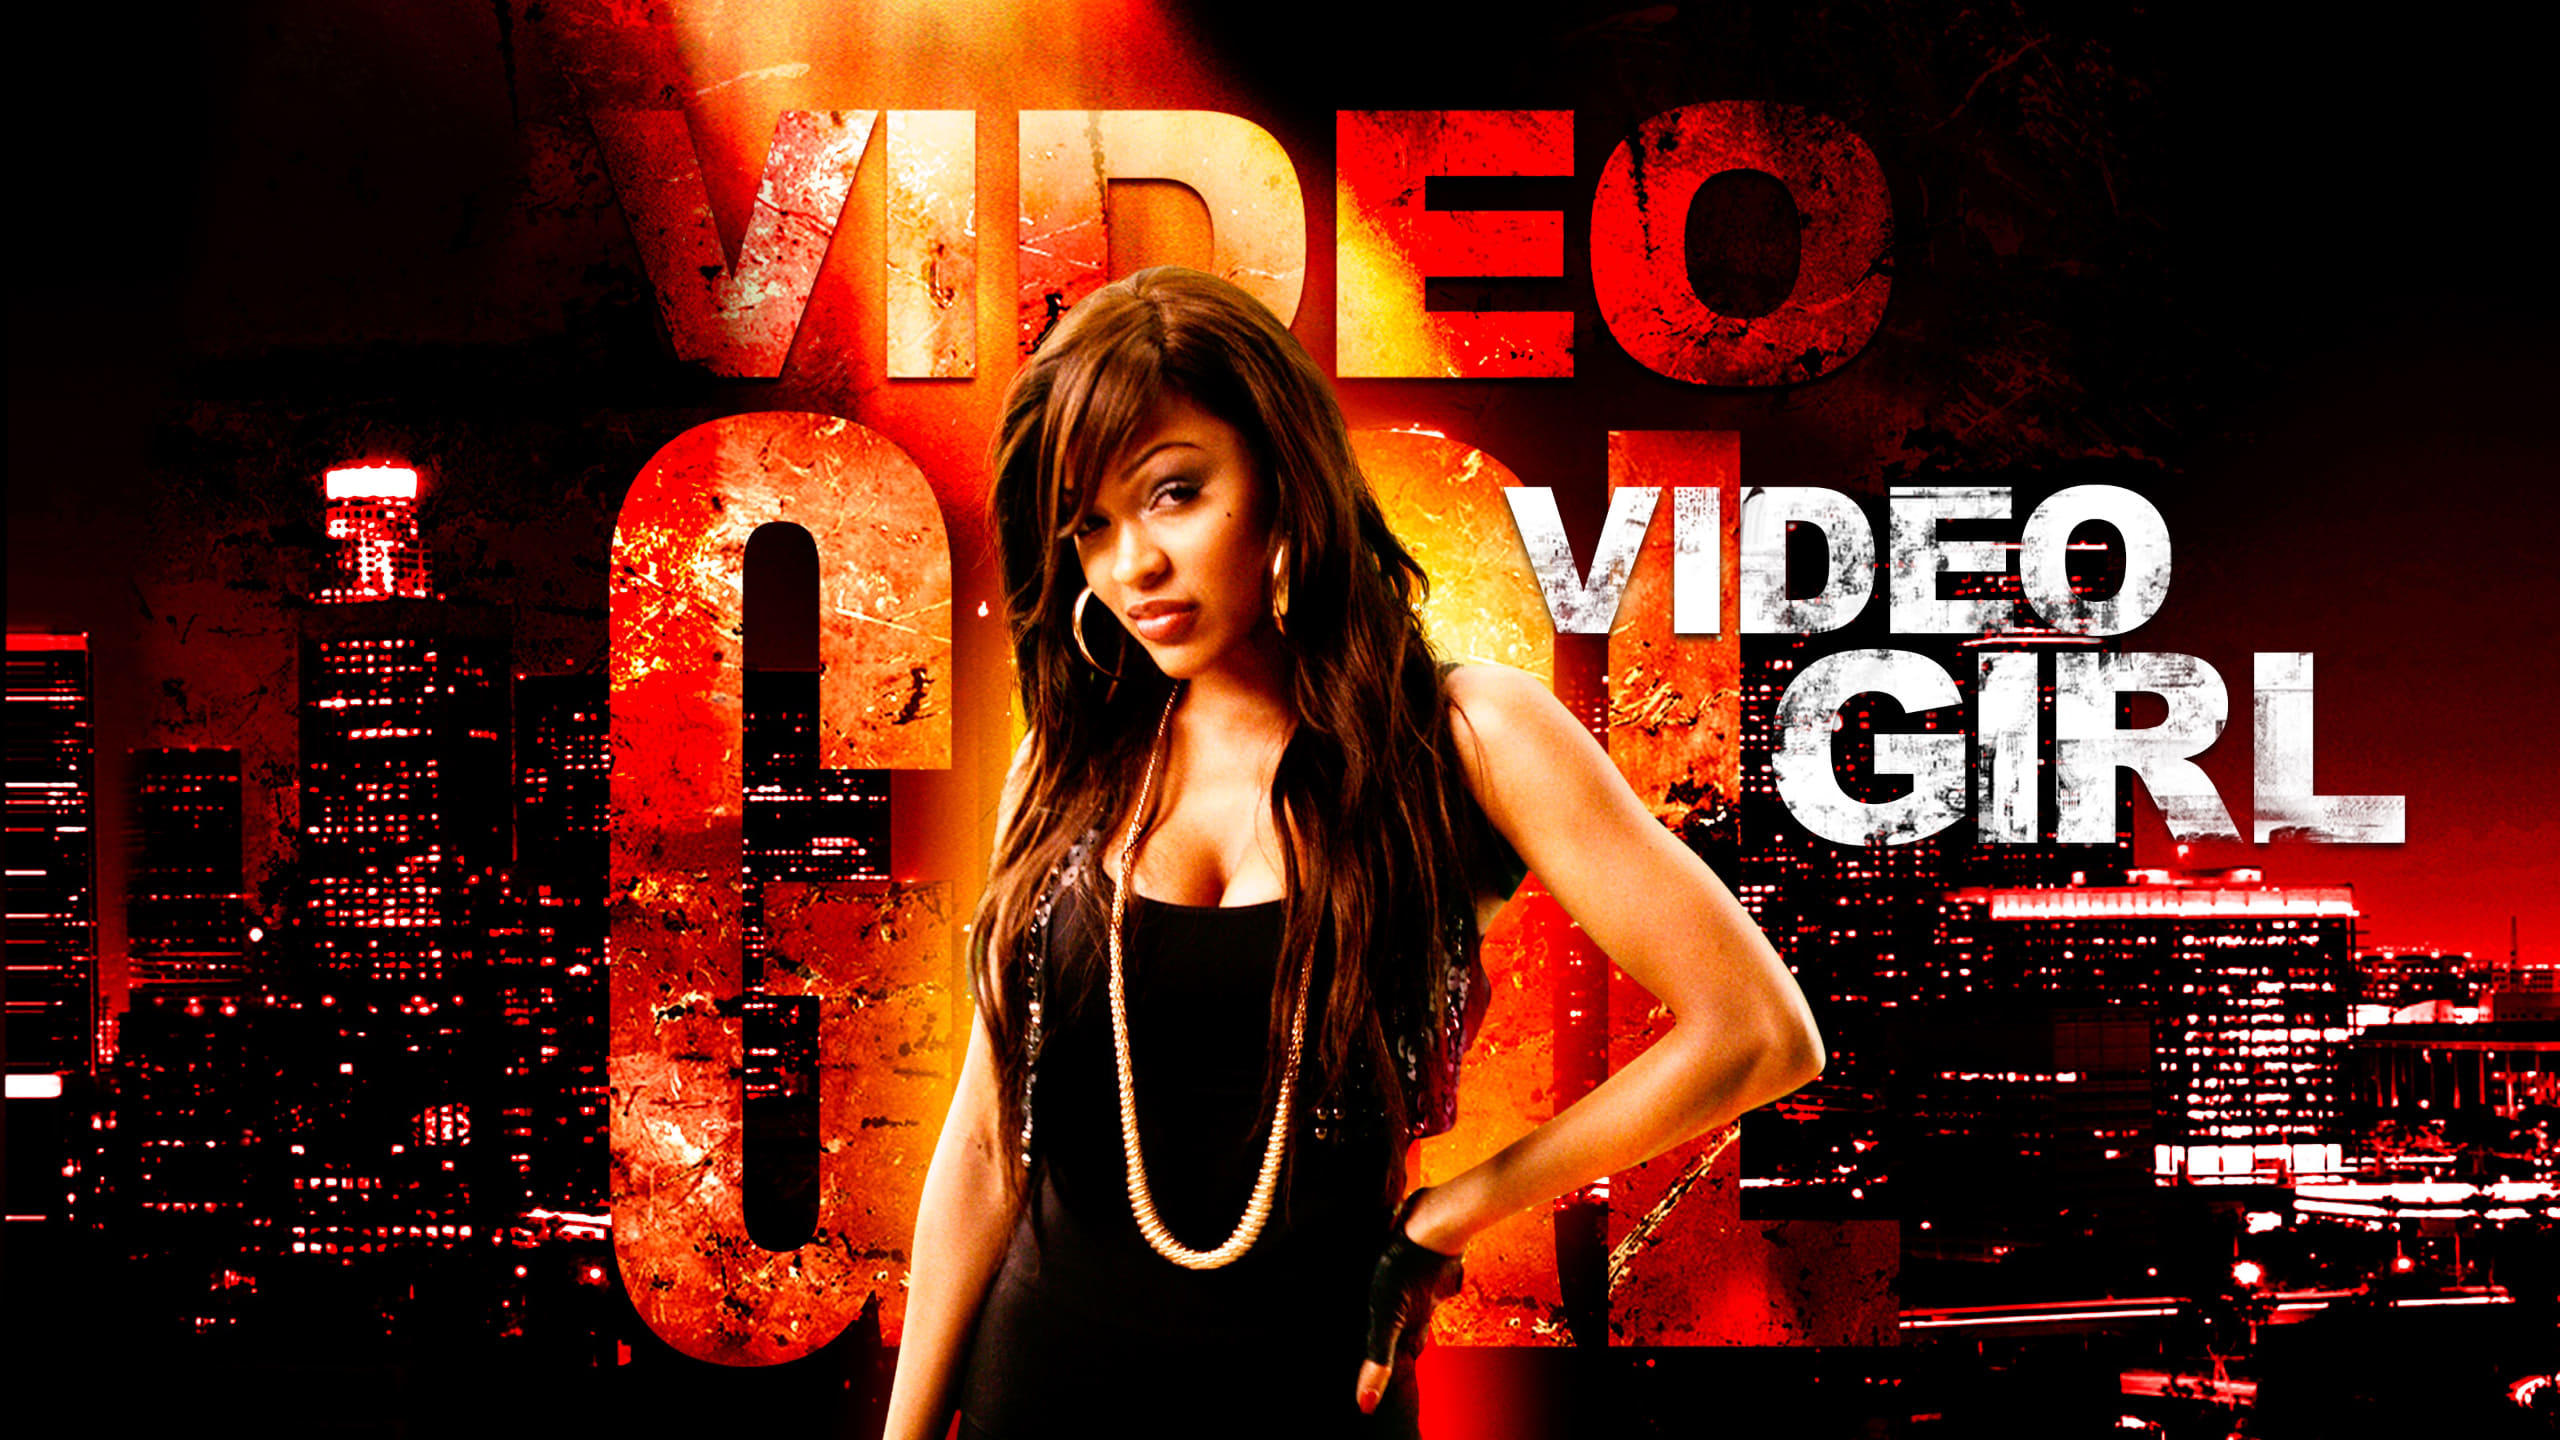 Video Girl